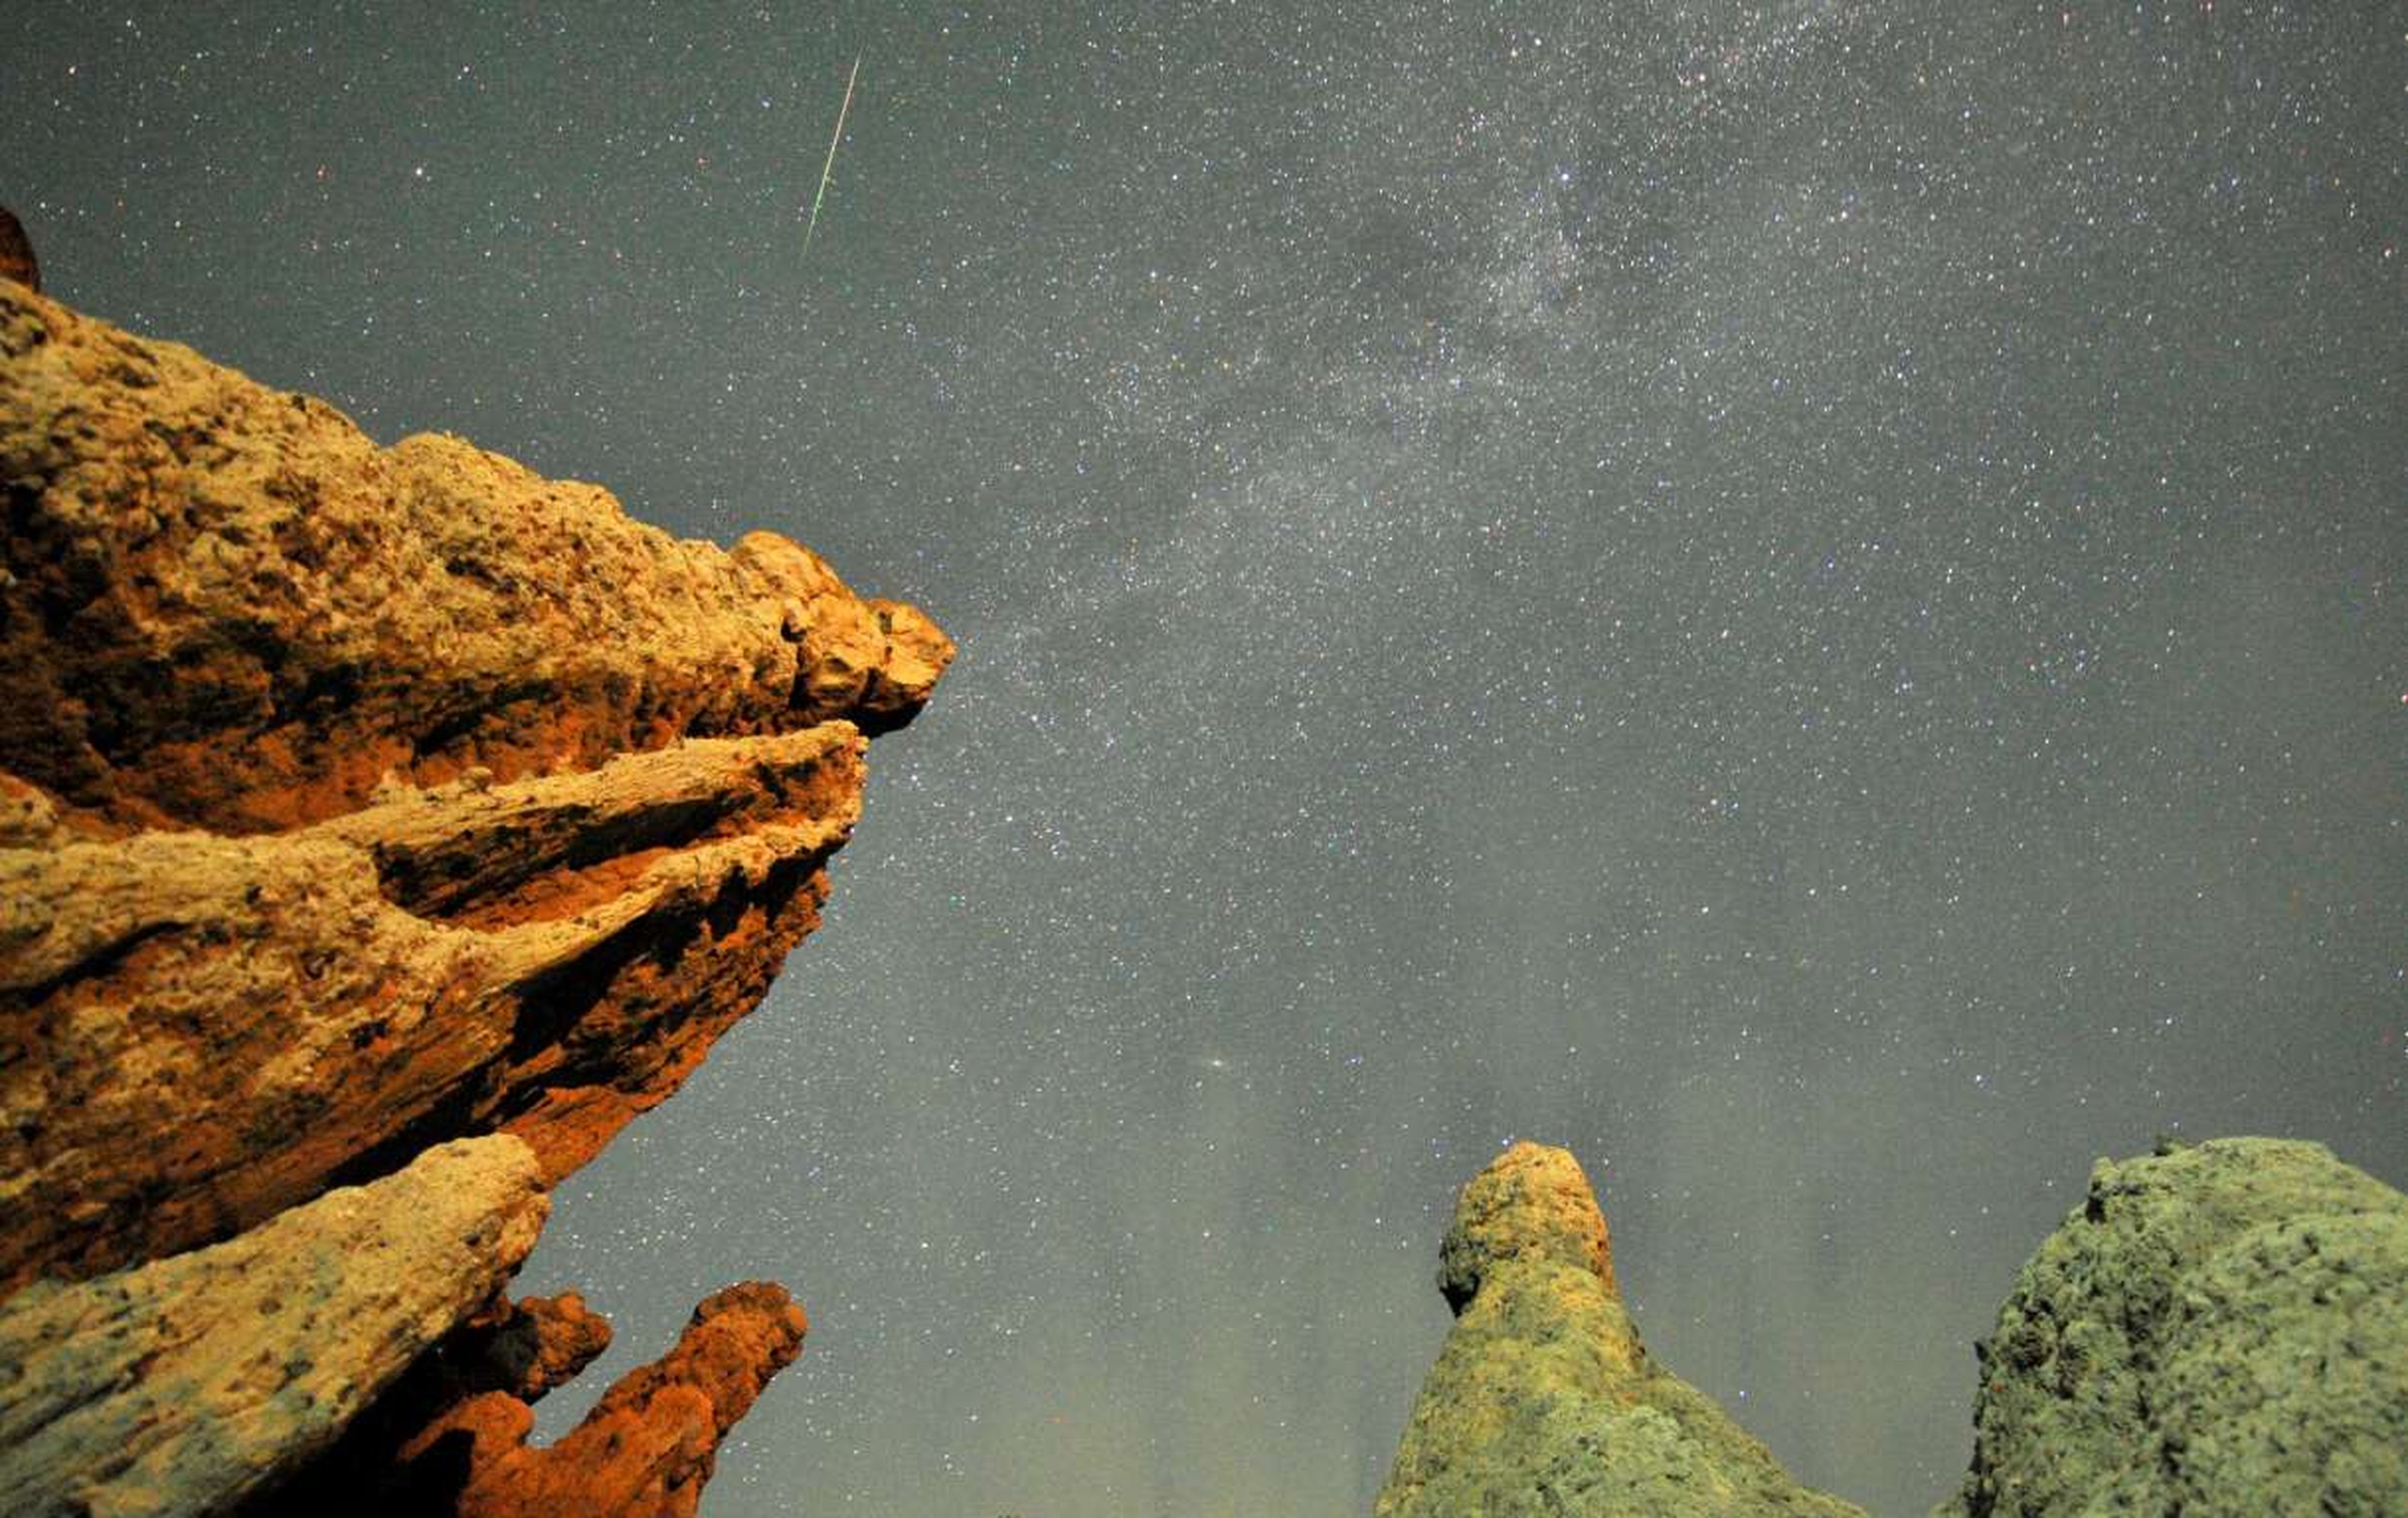 La estela de un comenta entre las estrellas del cielo nocturno de la localidad de Kuklici, en Macedonia.